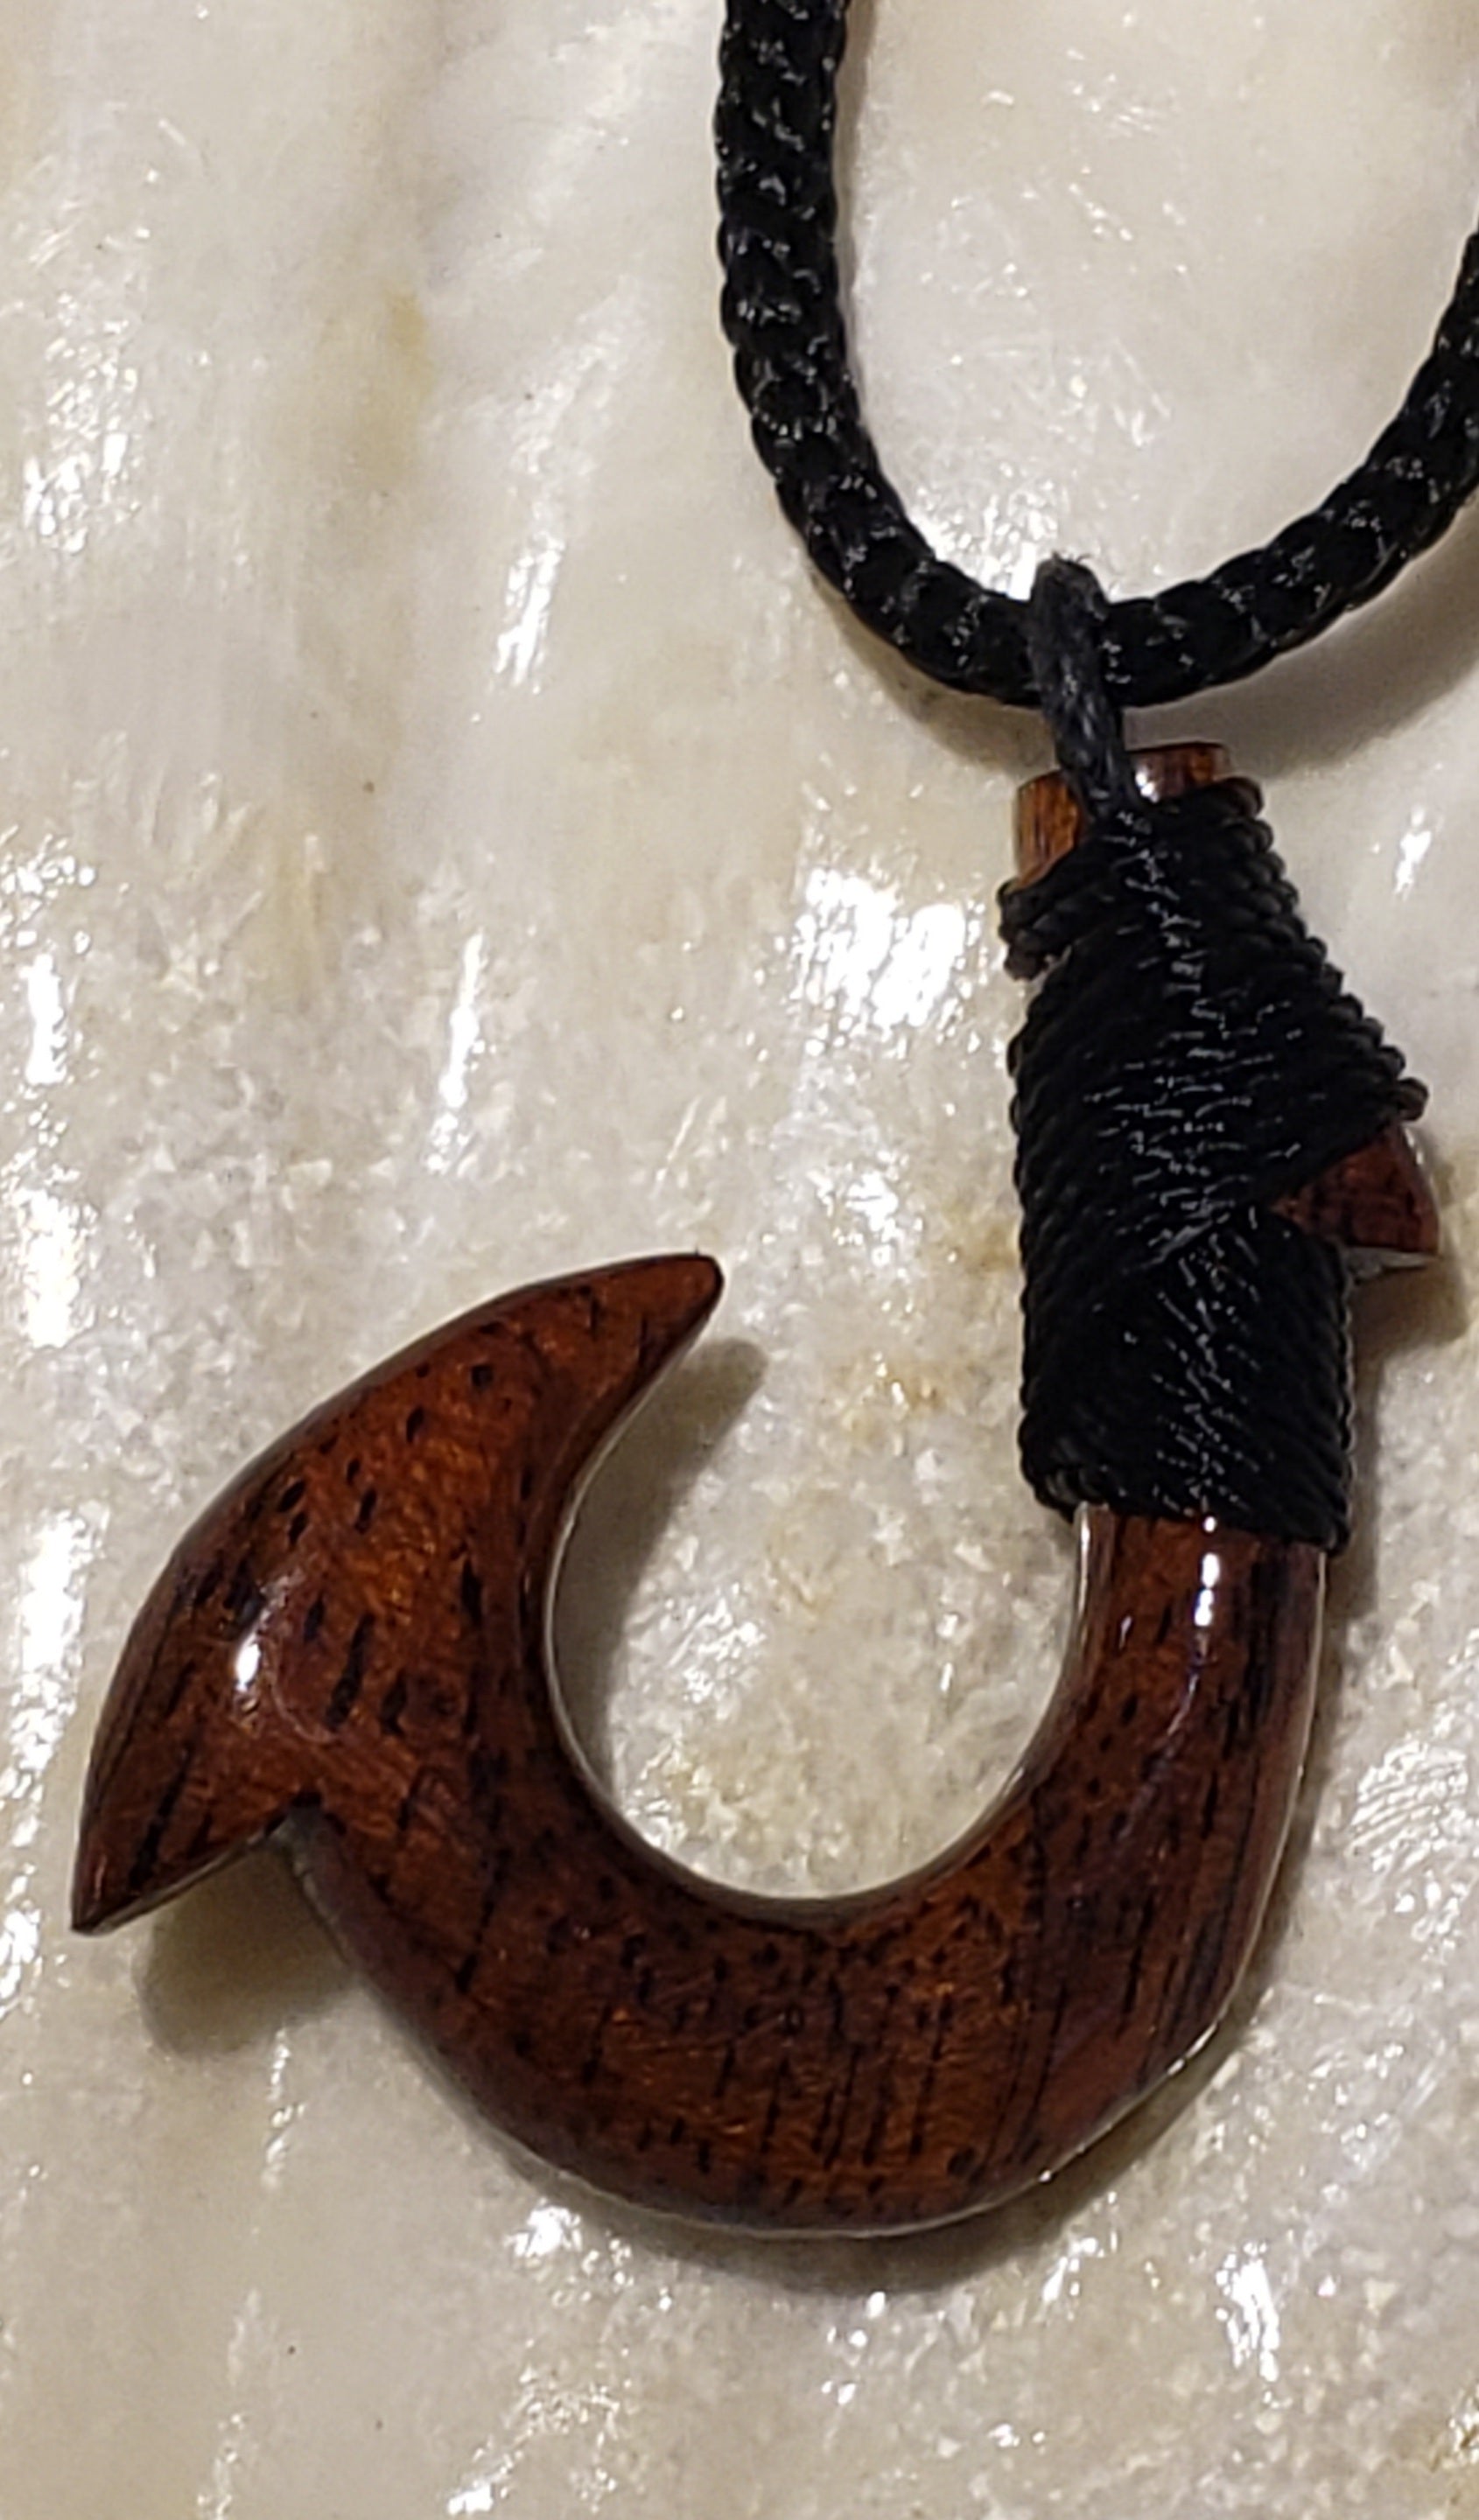 Koa Wood Hook (small) with Hawaiian tribal design 32" long Adjustable Cord